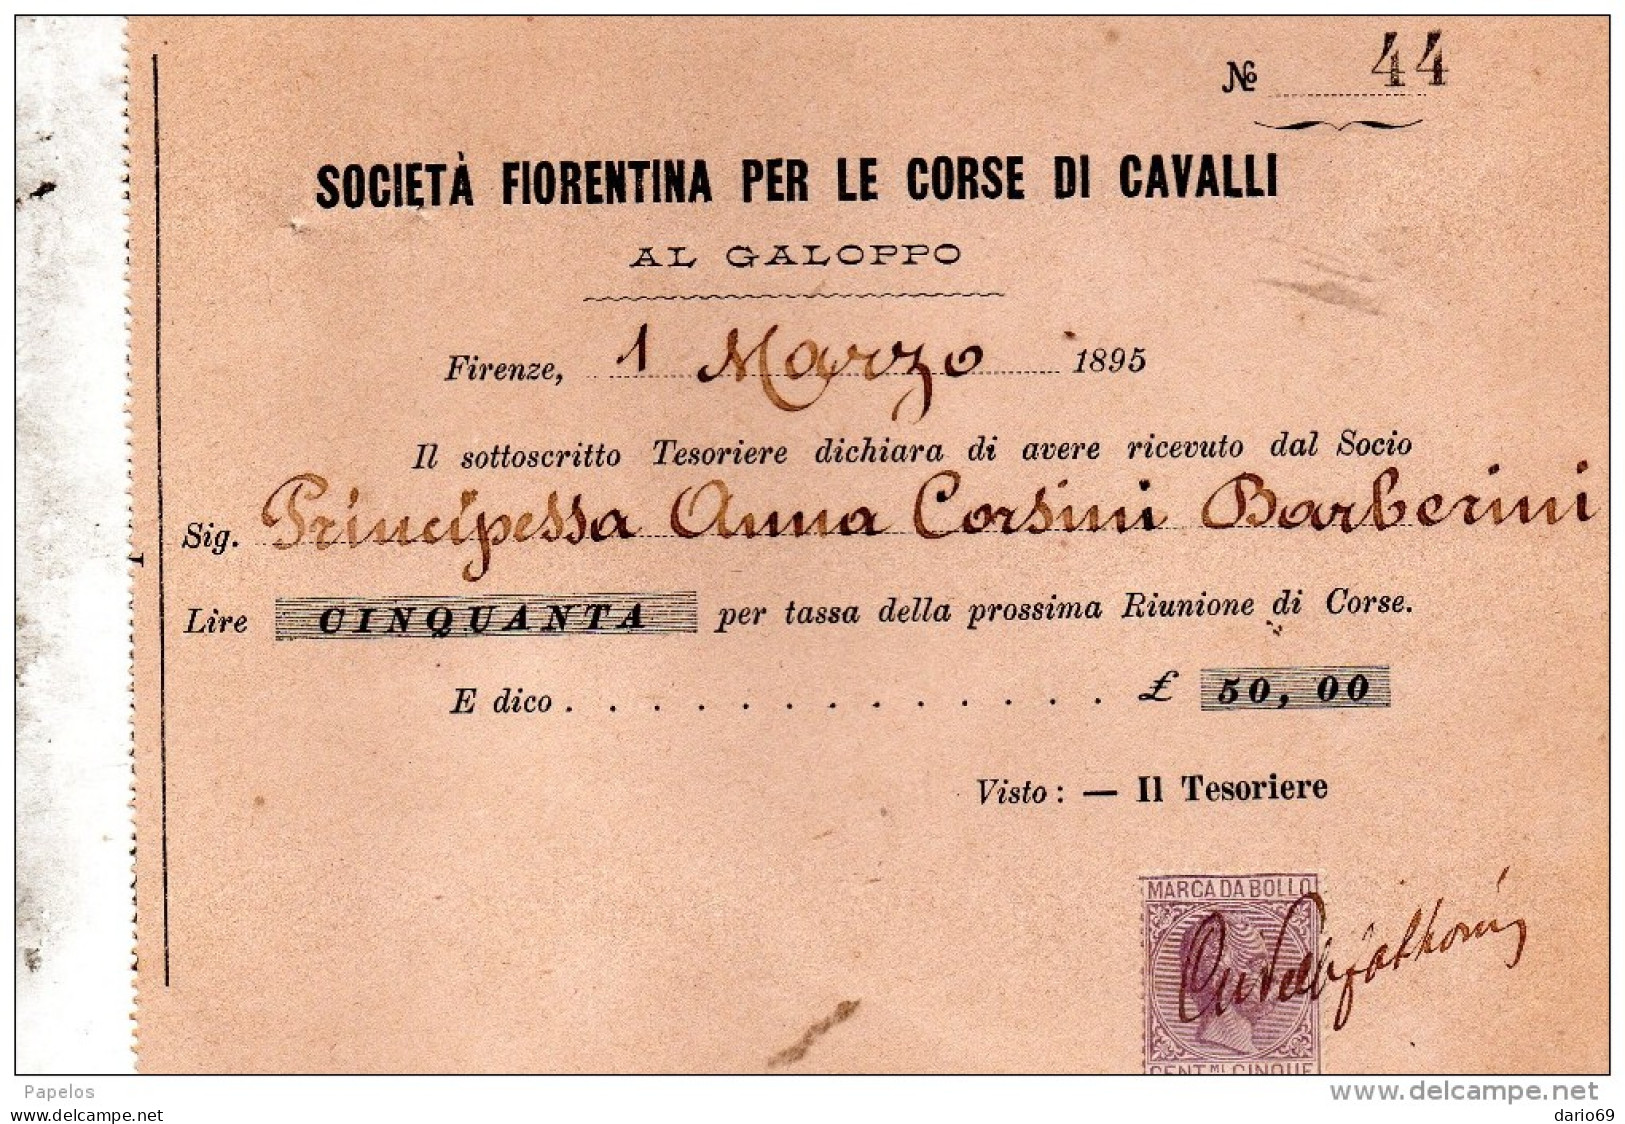 1895 SOCIETÀ FIORENTINA PER LE CORSE DI CAVALLI AL GALOPPO - Italy